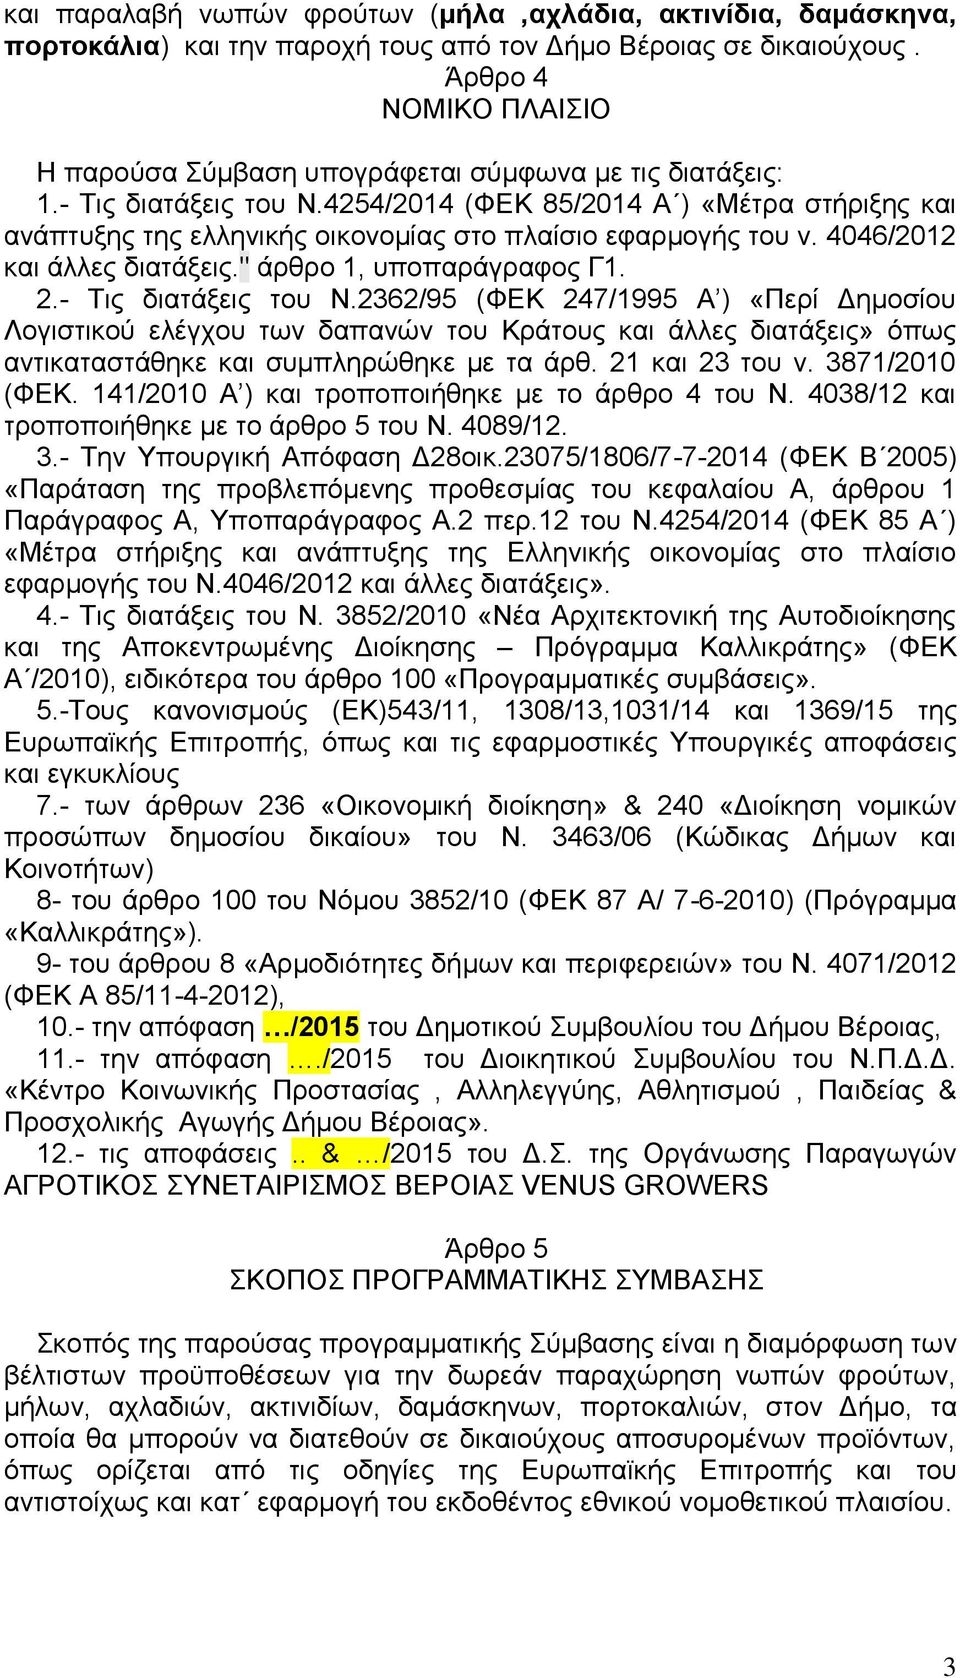 4254/2014 (ΦΕΚ 85/2014 Α ) «Μέτρα στήριξης και ανάπτυξης της ελληνικής οικονομίας στο πλαίσιο εφαρμογής του ν. 4046/2012 και άλλες διατάξεις." άρθρο 1, υποπαράγραφος Γ1. 2.- Τις διατάξεις του Ν.